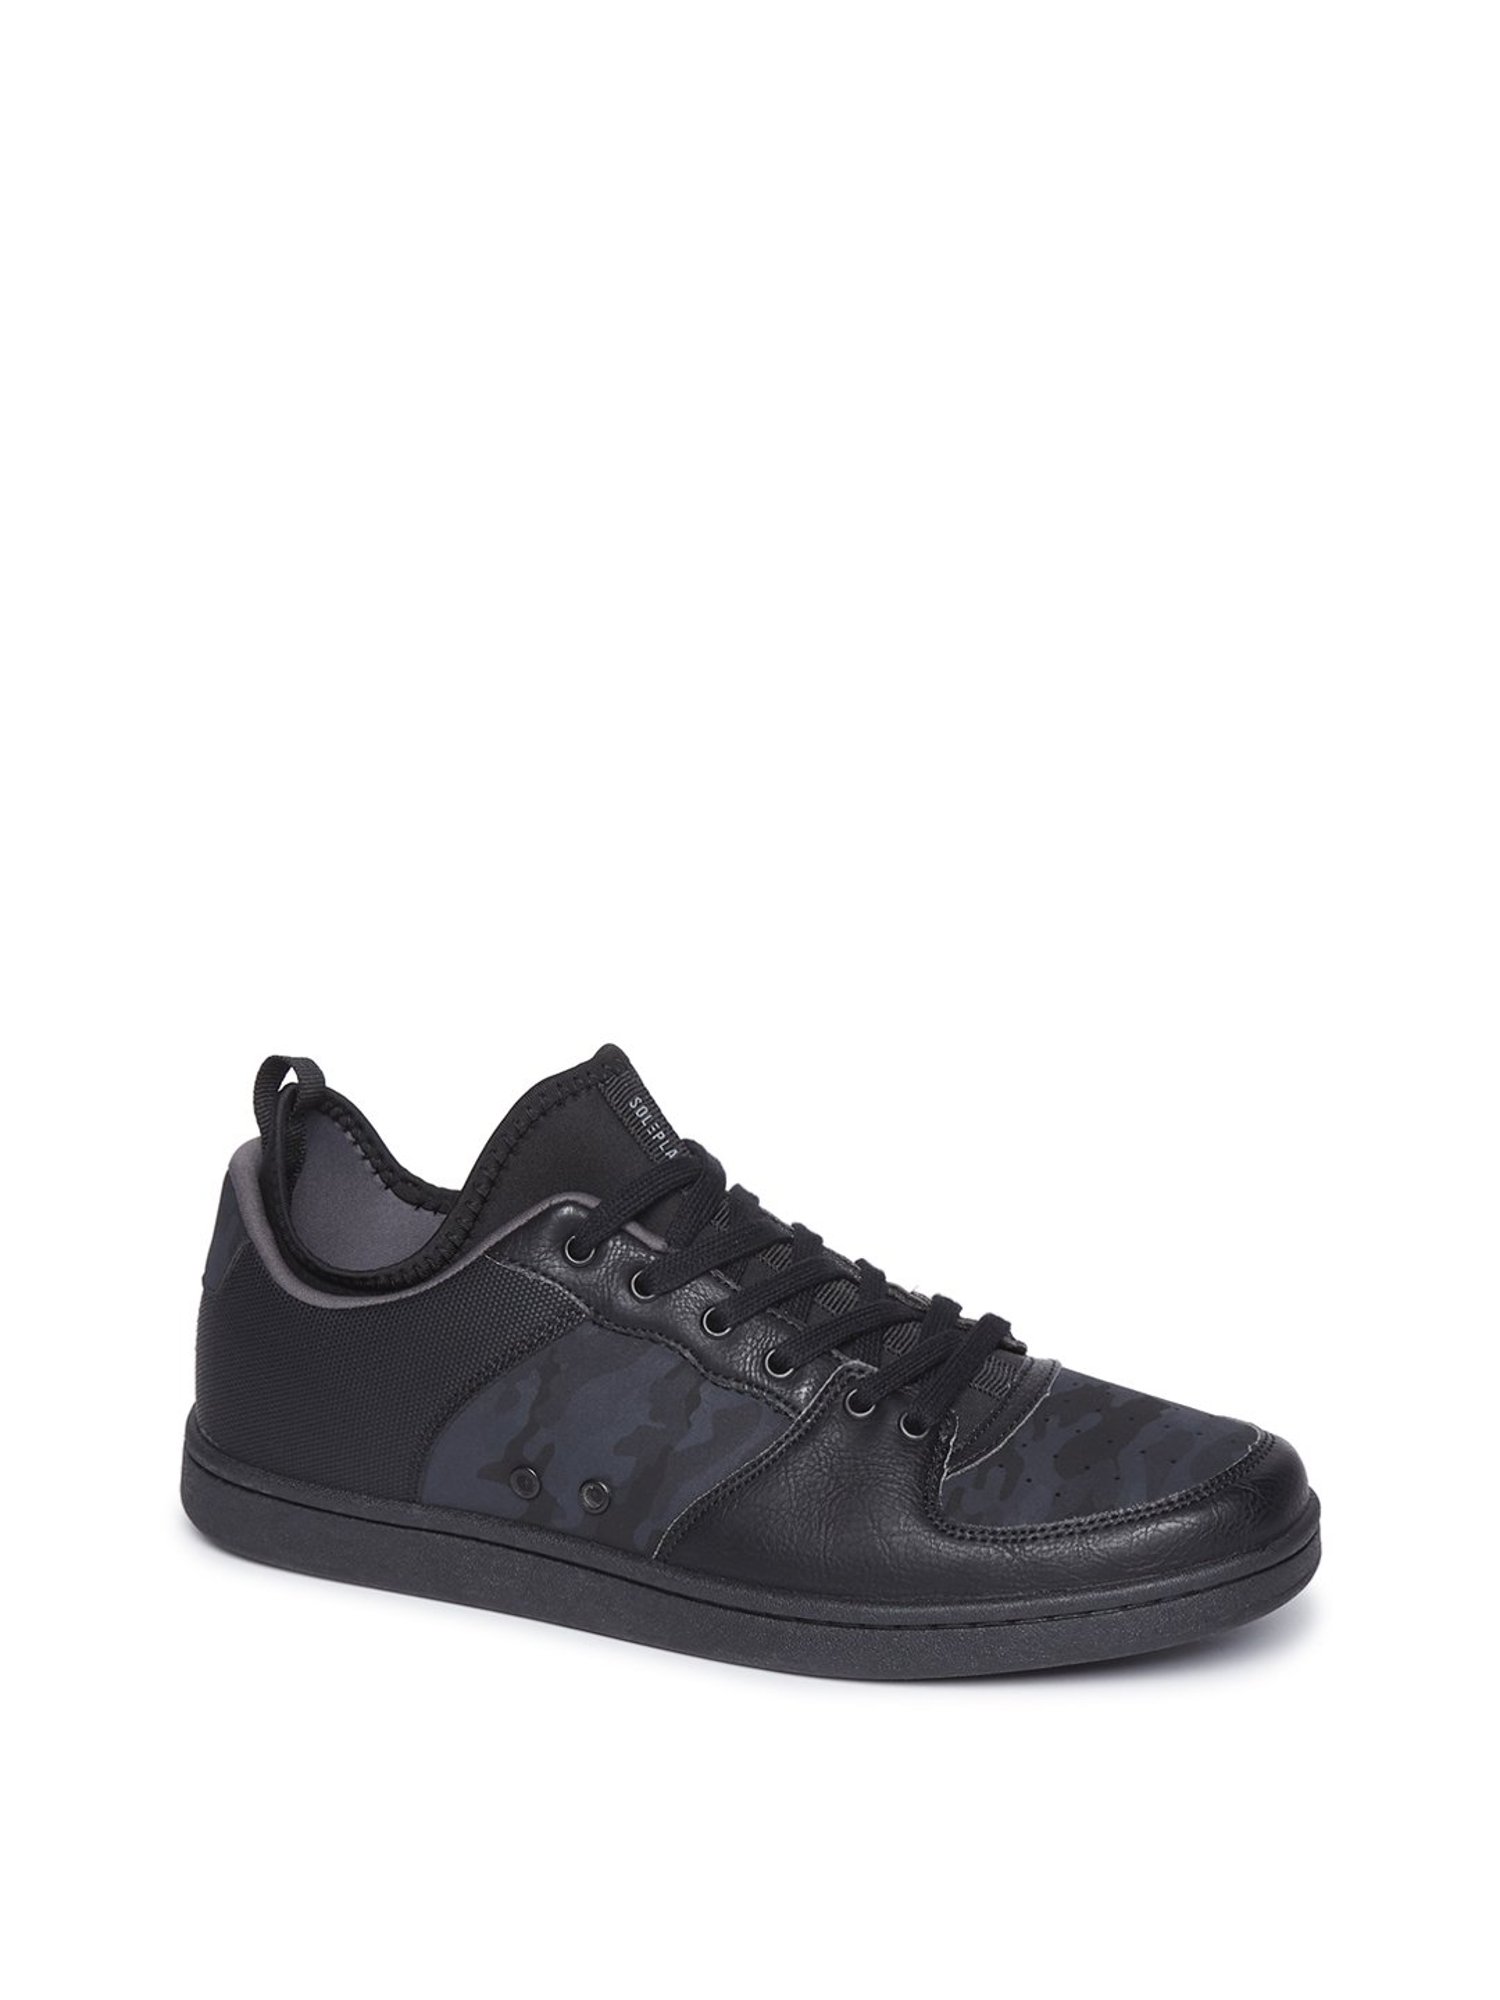 soleplay black sneakers